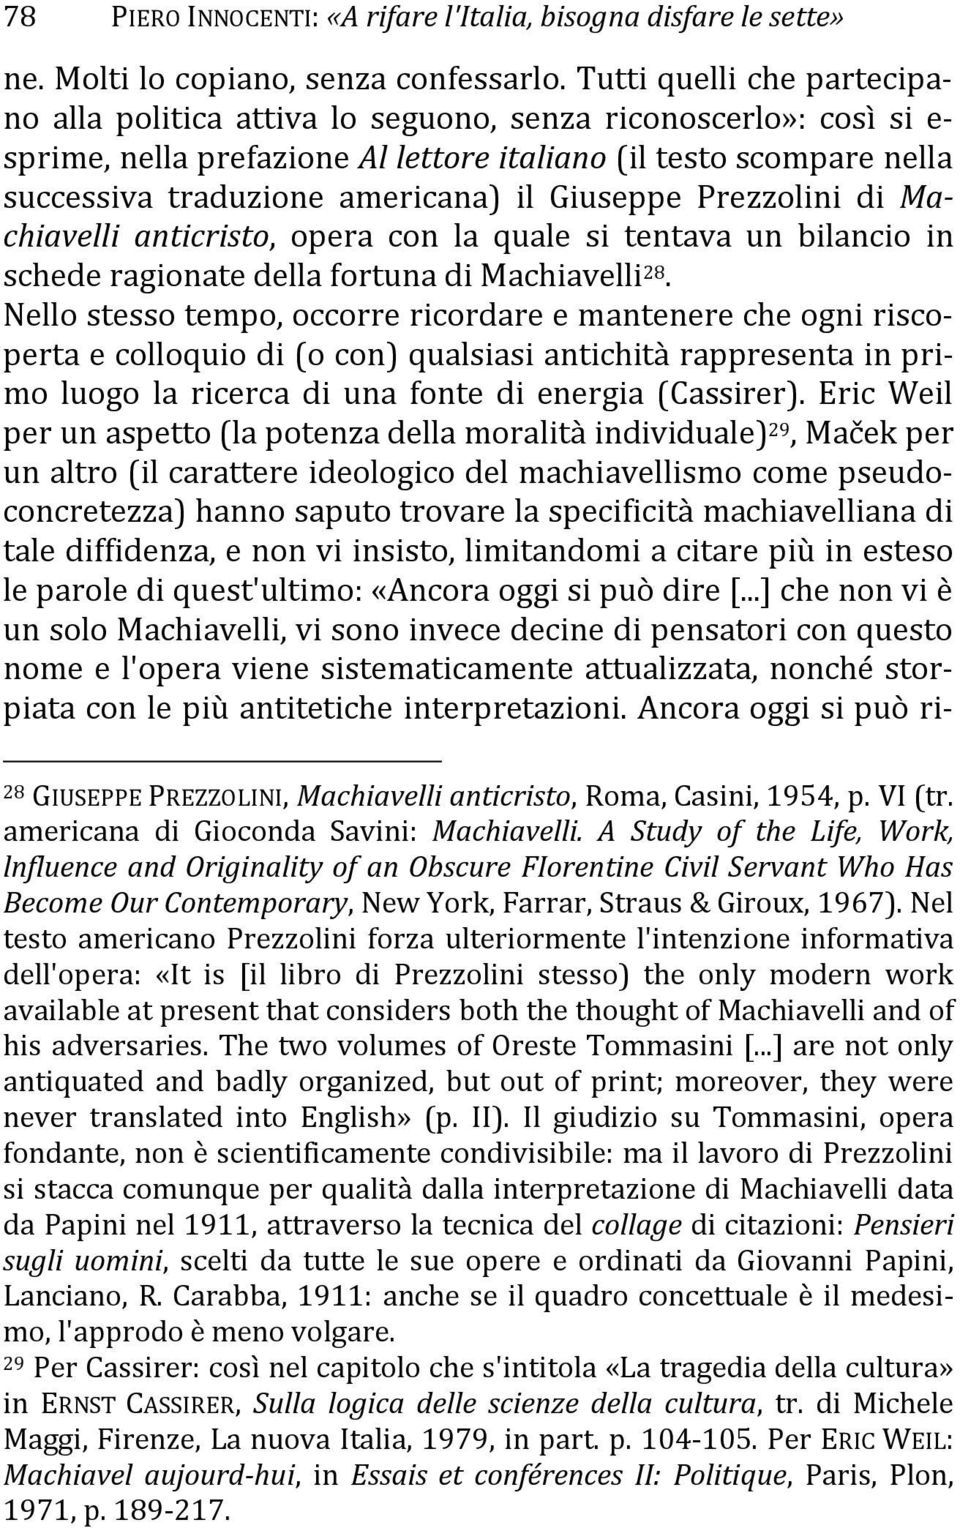 Giuseppe Prezzolini di Machiavelli anticristo, opera con la quale si tentava un bilancio in schede ragionate della fortuna di Machiavelli 28.